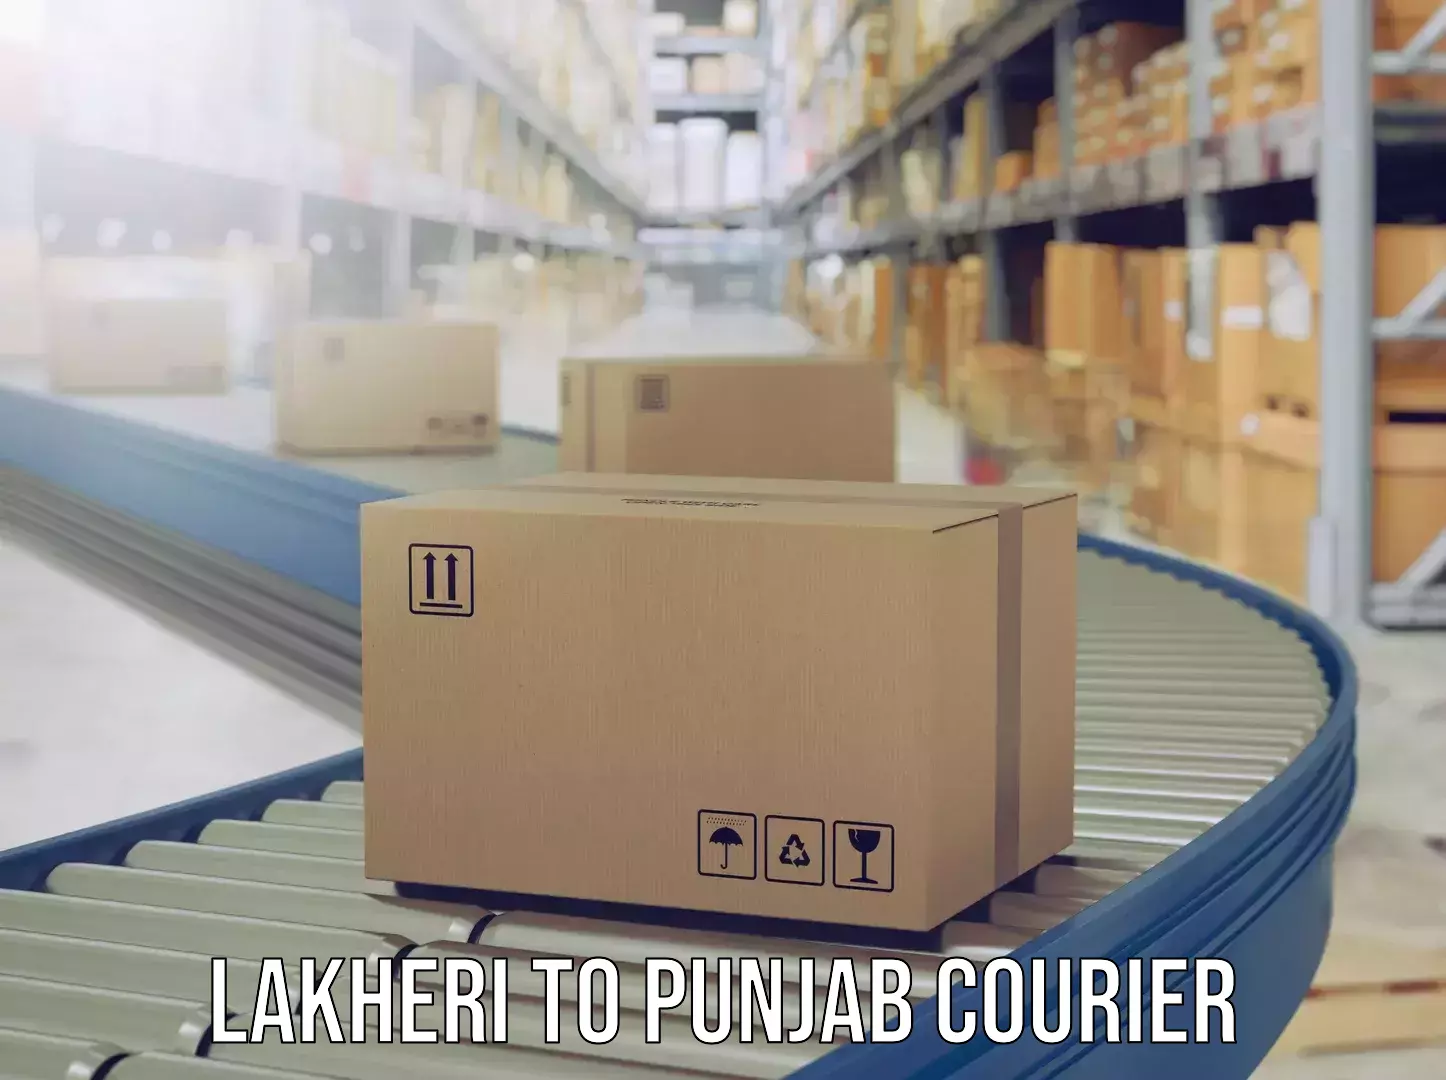 Personal baggage courier Lakheri to Punjab